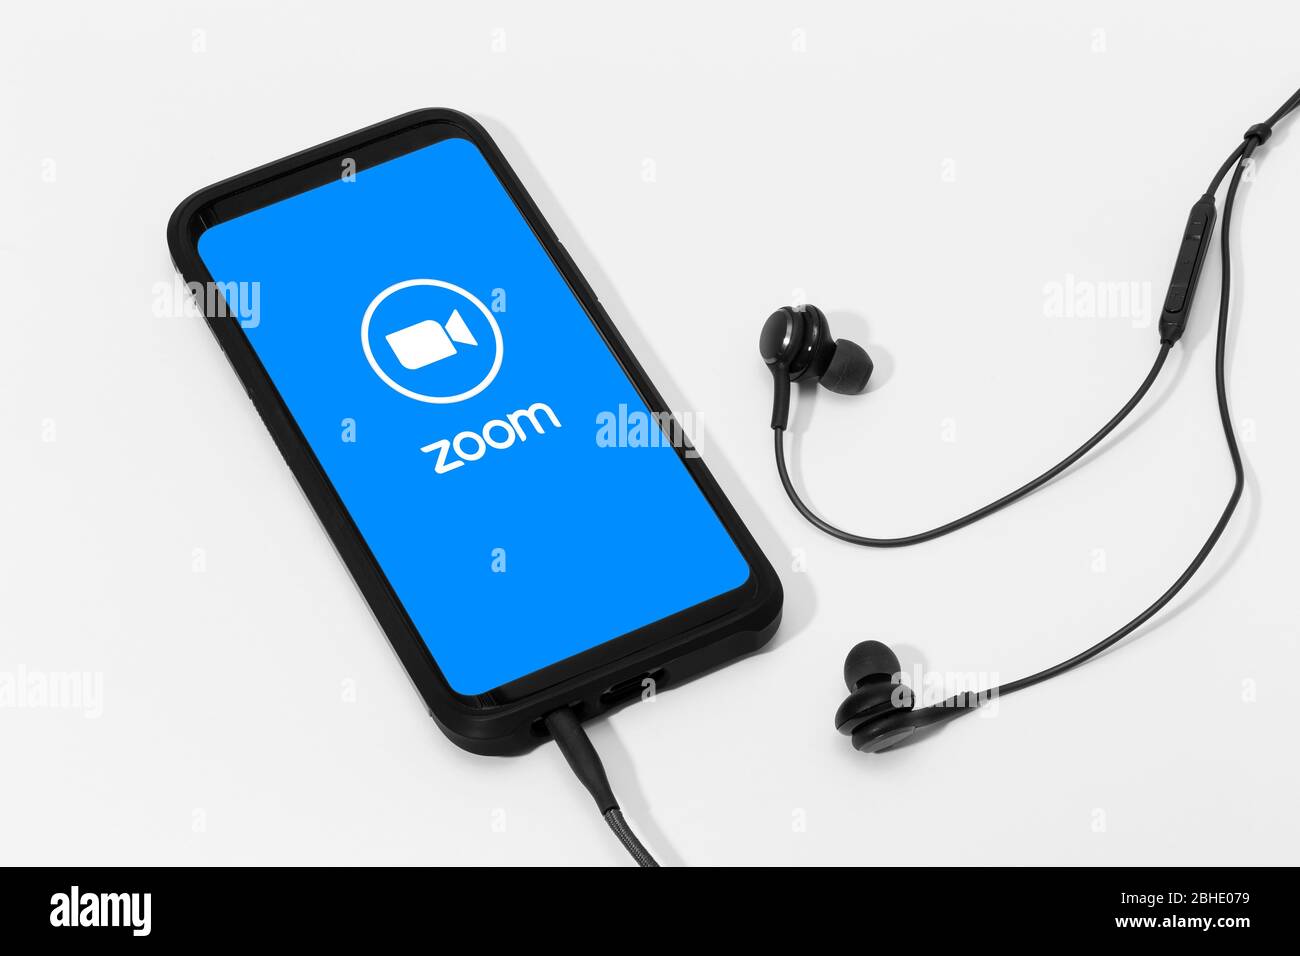 Galicien, Spanien; 25. april 2020: Smartphone mit Zoom Communications-App und Logo auf dem Bildschirm Stockfoto